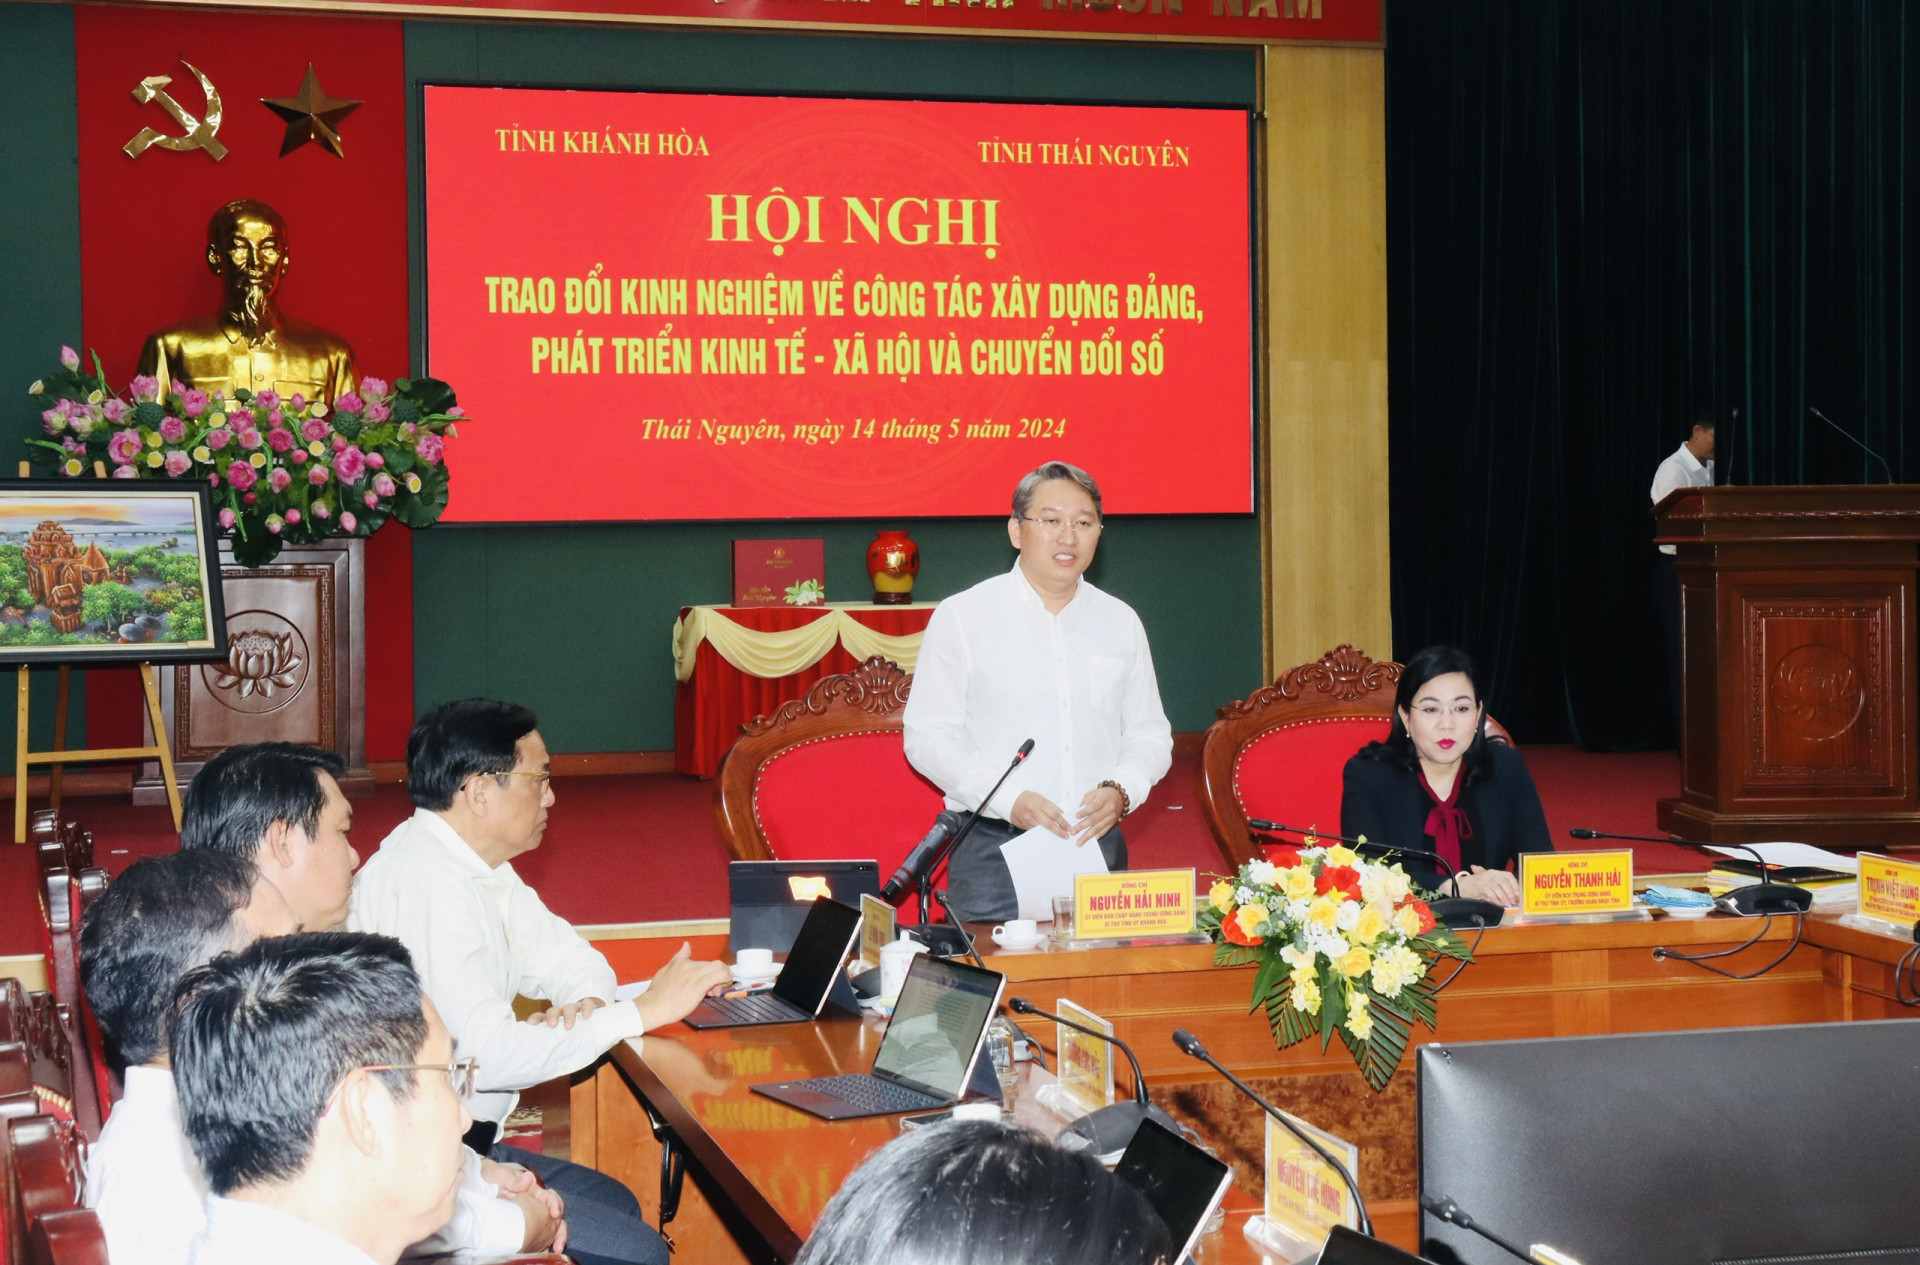 Bí thư Tỉnh ủy Khánh Hòa Nguyễn Hải Ninh phát biểu tại buổi thăm và làm việc với Tỉnh ủy Thái Nguyên